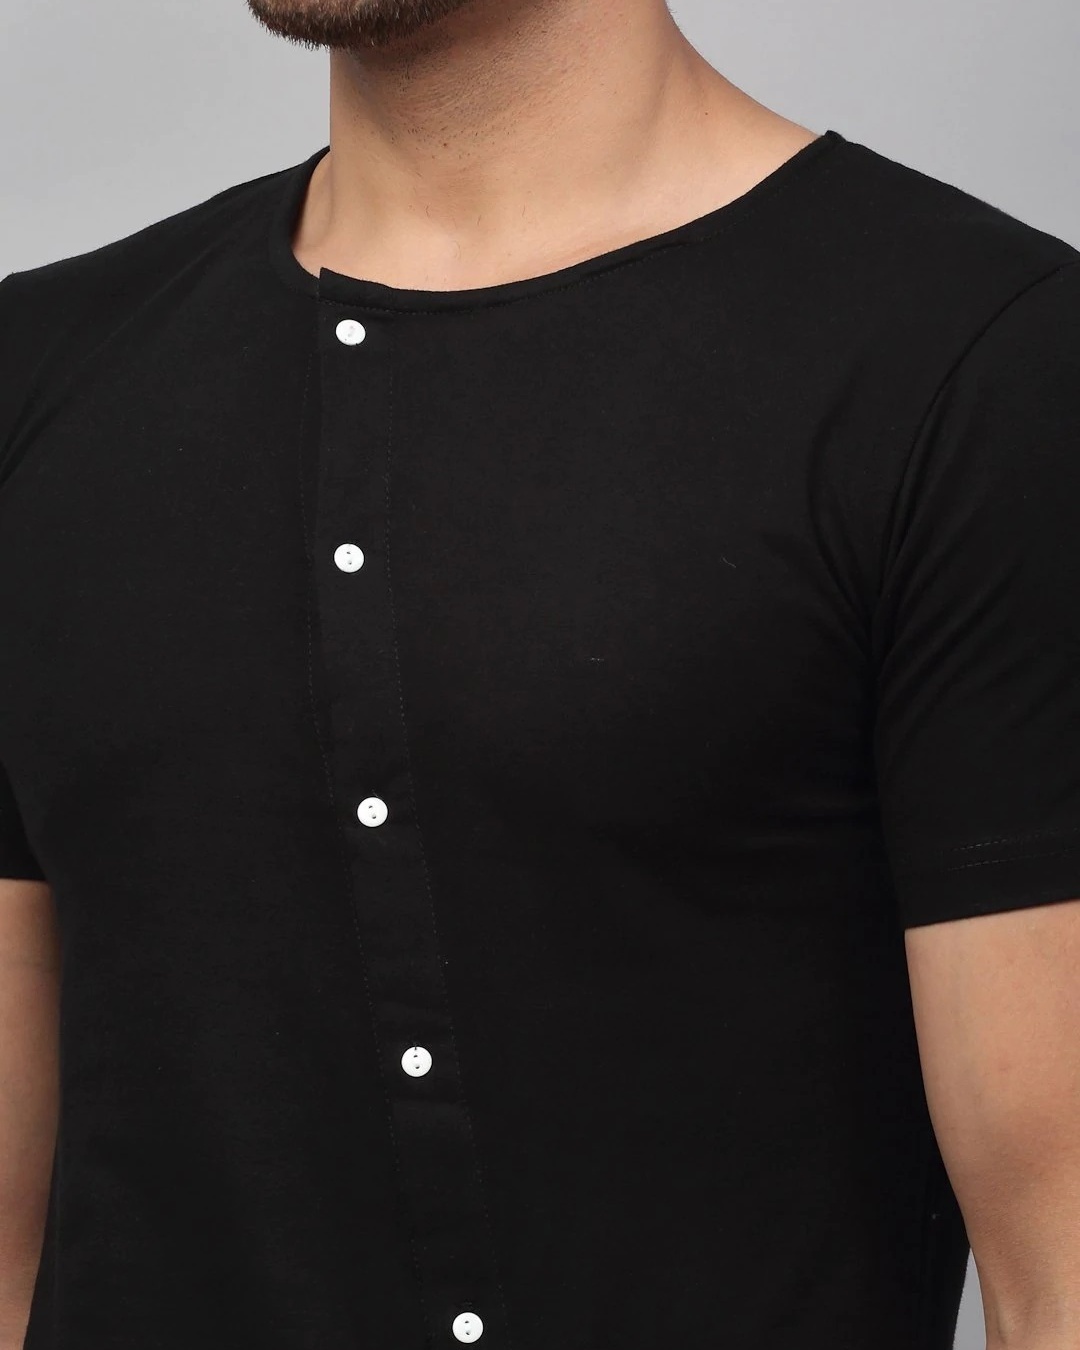 Shop Men's Black Cross Buttons T-shirt